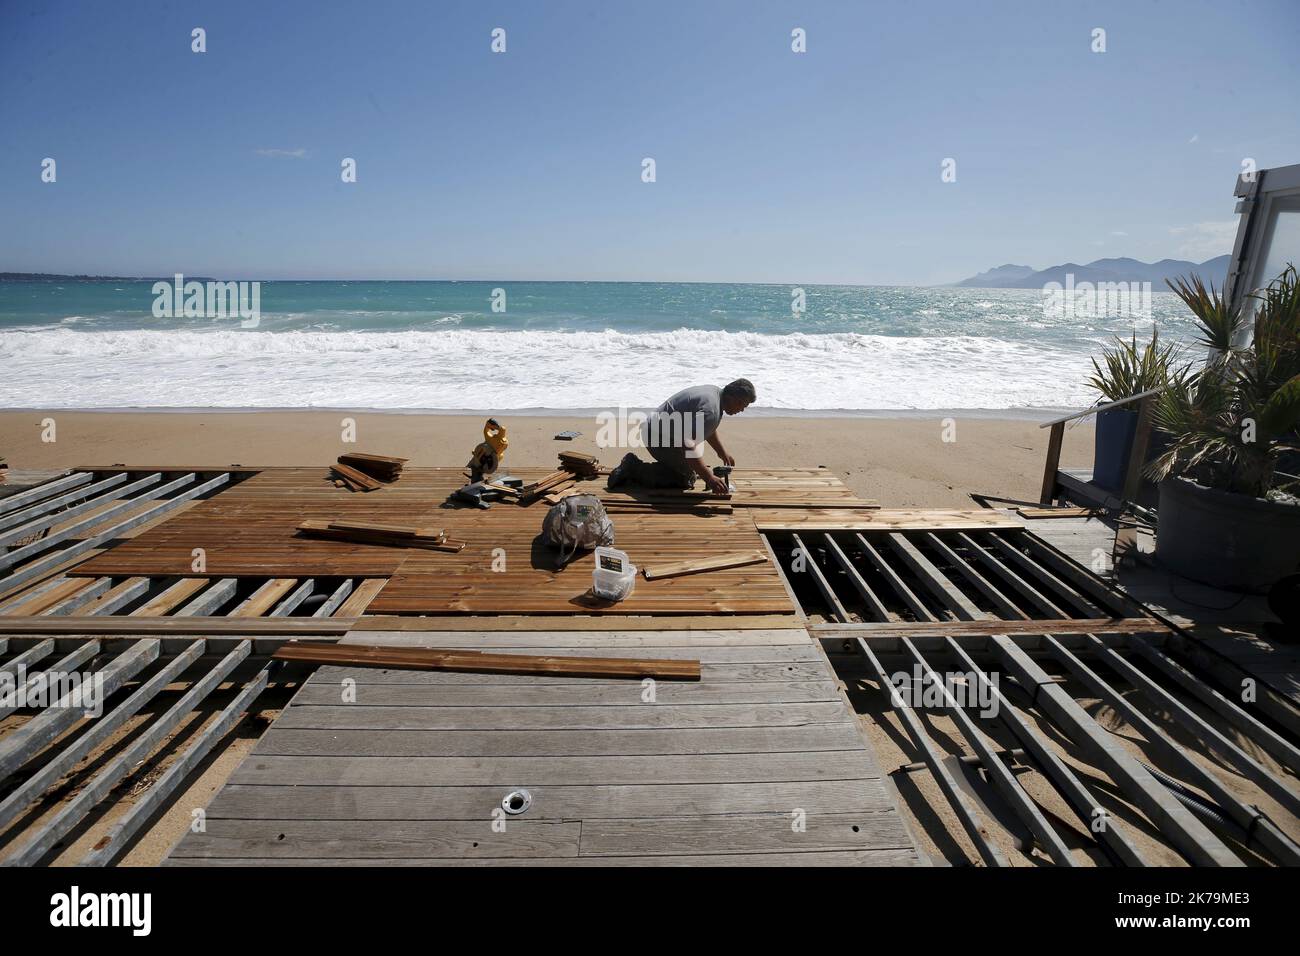 CANNES, 05/15/2020, installation d'une plage privée sur les plages du midi en attente d'autorisation d'ouverture Banque D'Images